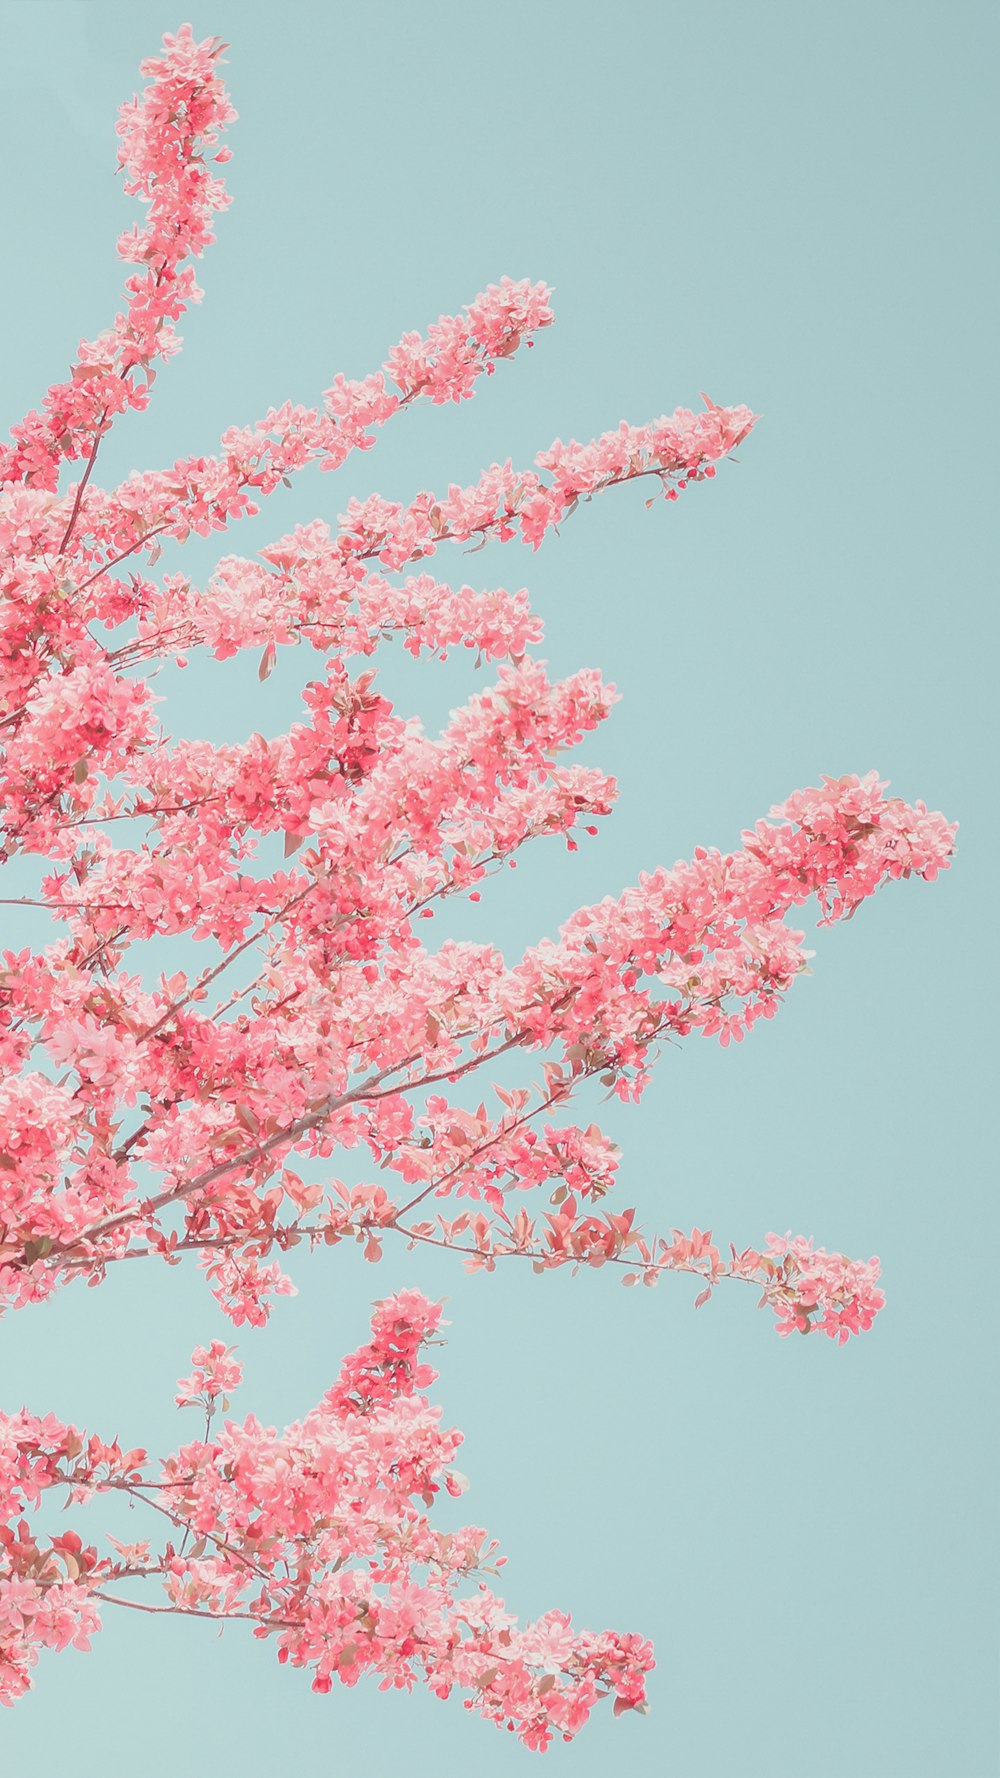 青空の前にピンク色の花が咲く木